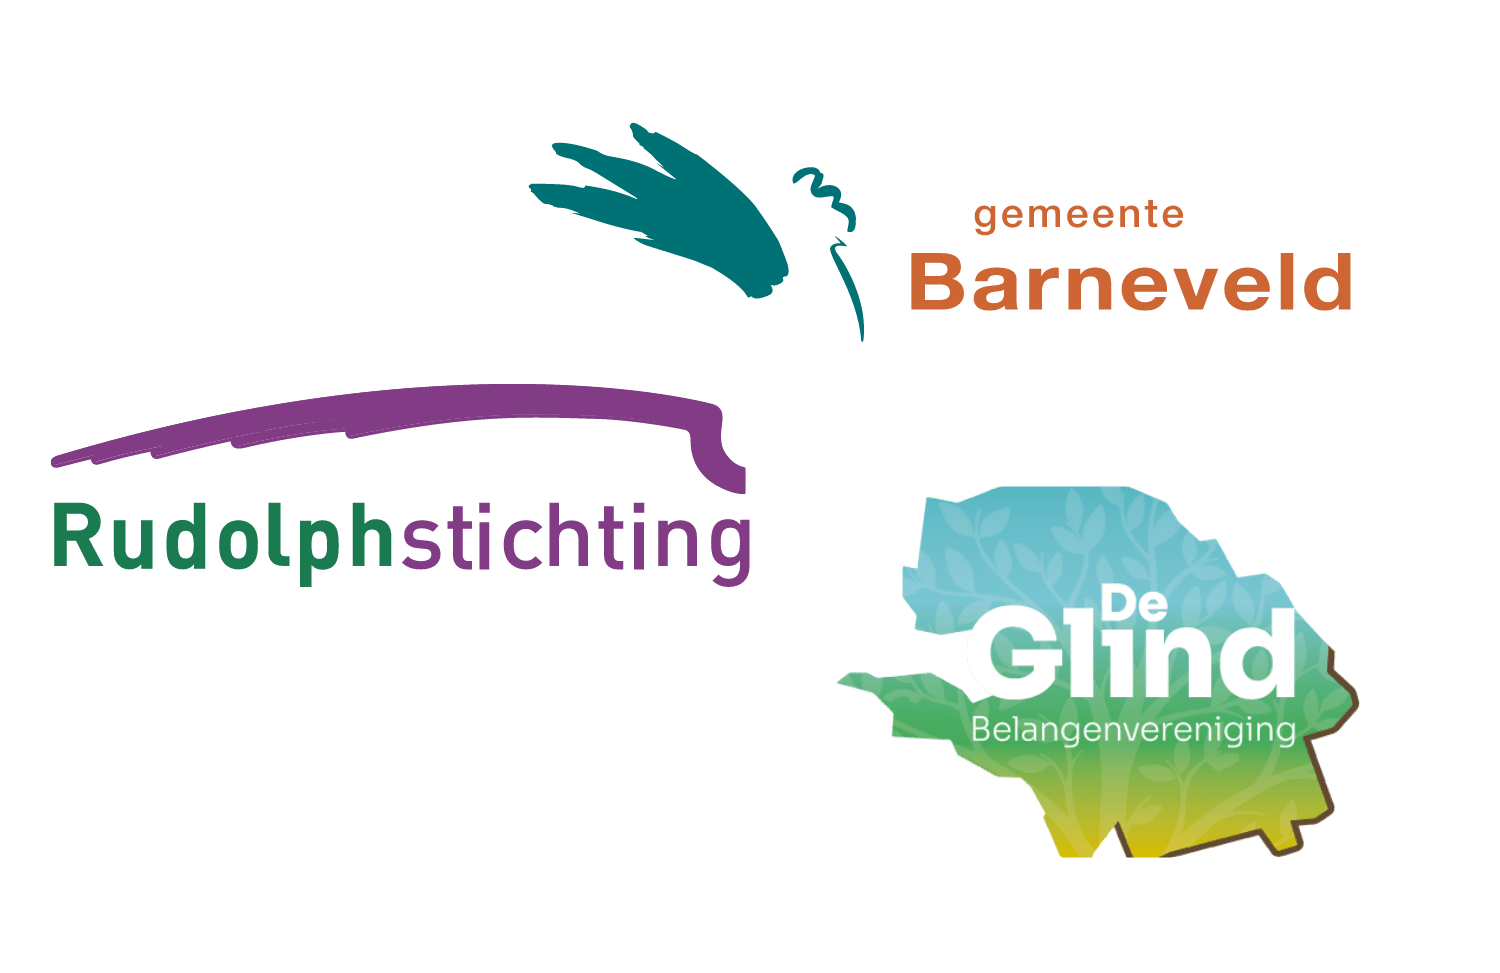 rudolphstichting-susteen-gemeente-barneveld-stuurgroep-de-glind